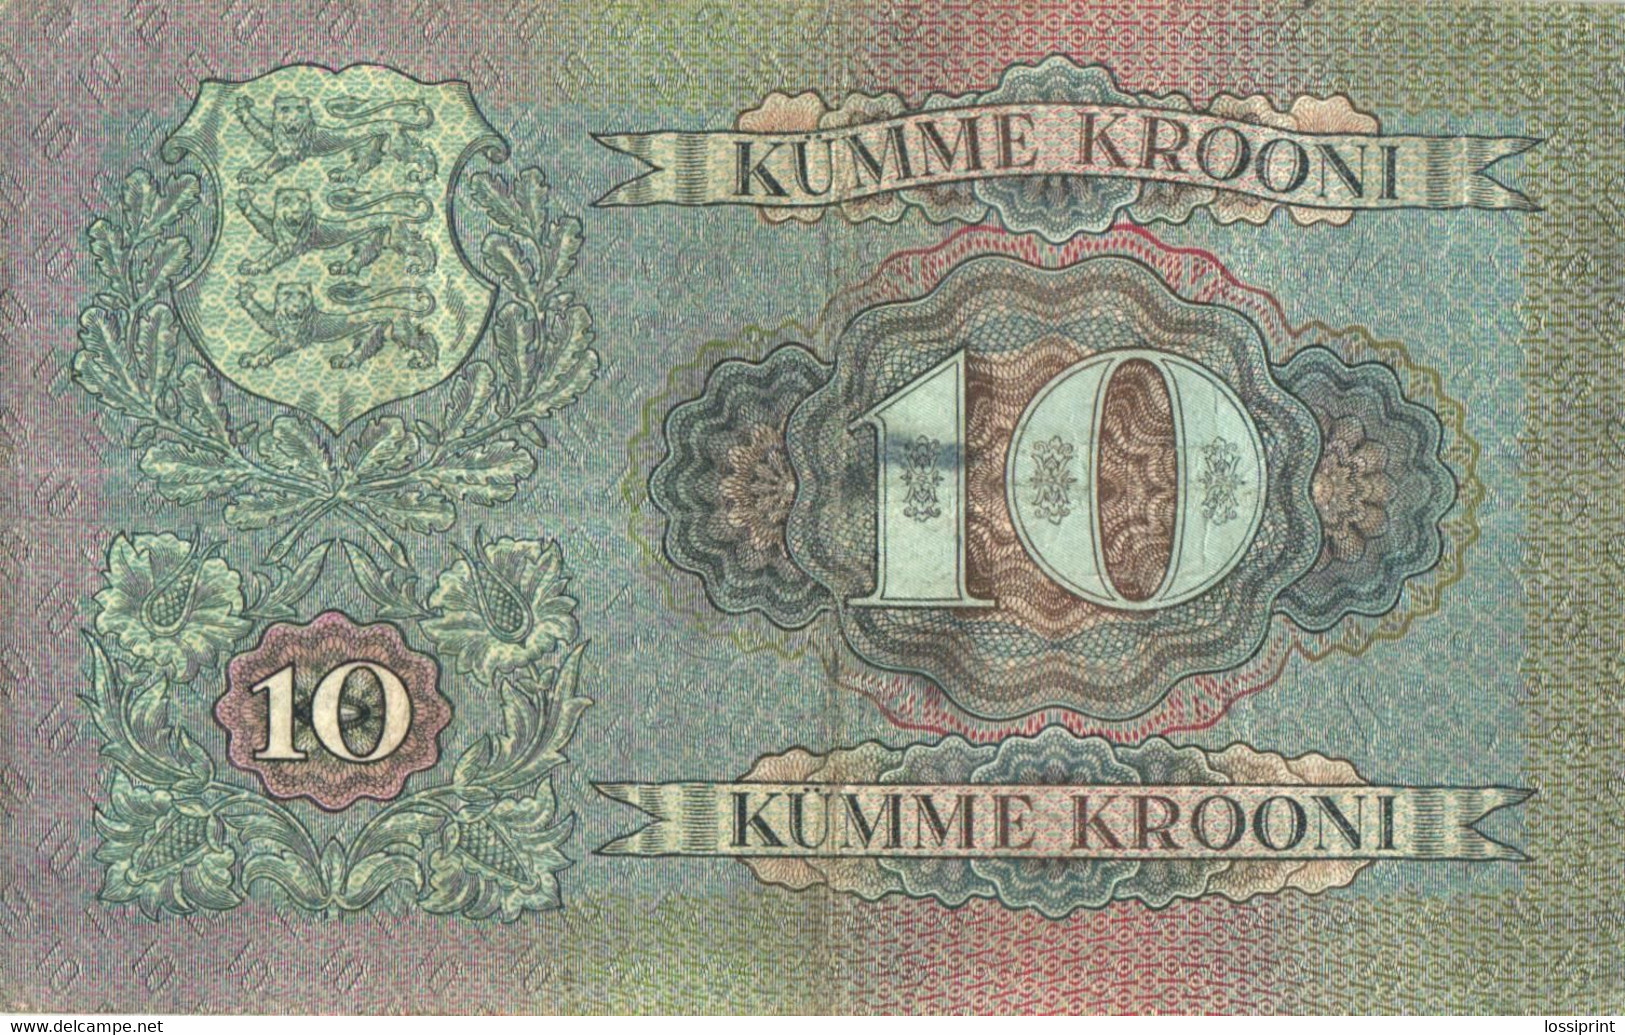 Estonia:10 Krooni 1937 - Estland